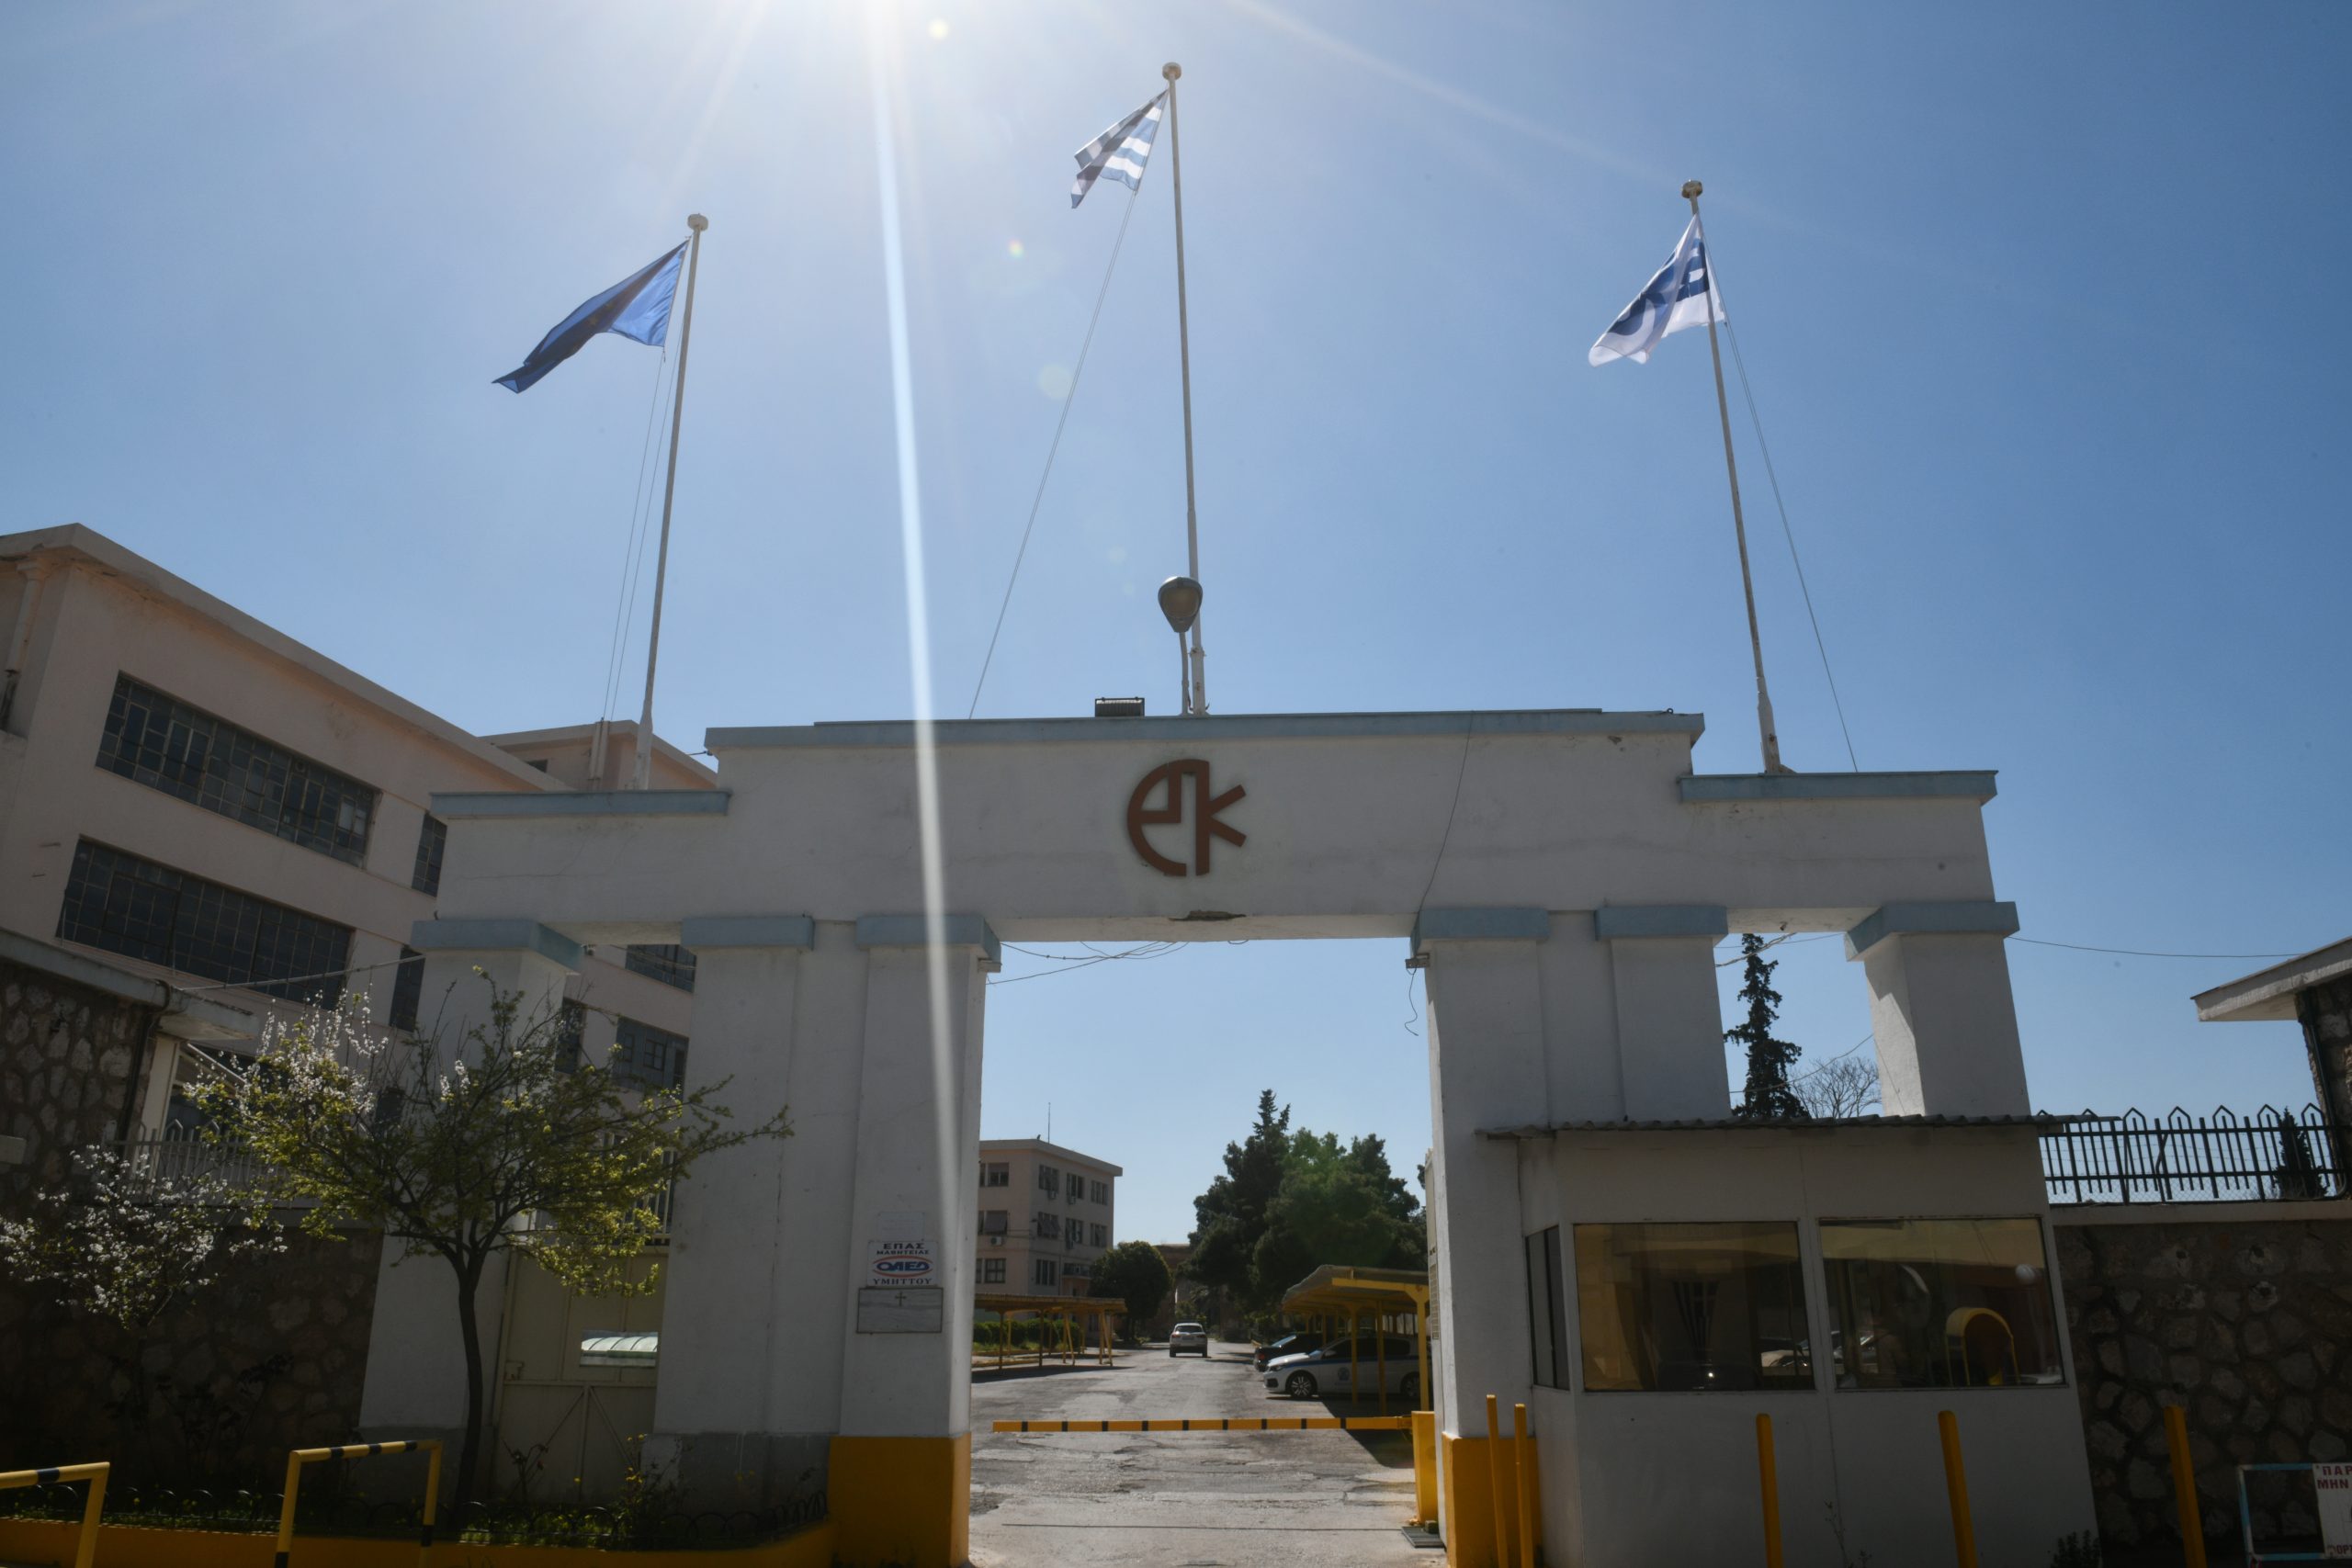 ΠΥΡΚΑΛ: Έξι ανταποδοτικά μέτρα για το δήμο Αθηναίων ζητά ο Κώστας Μπακογιάννης